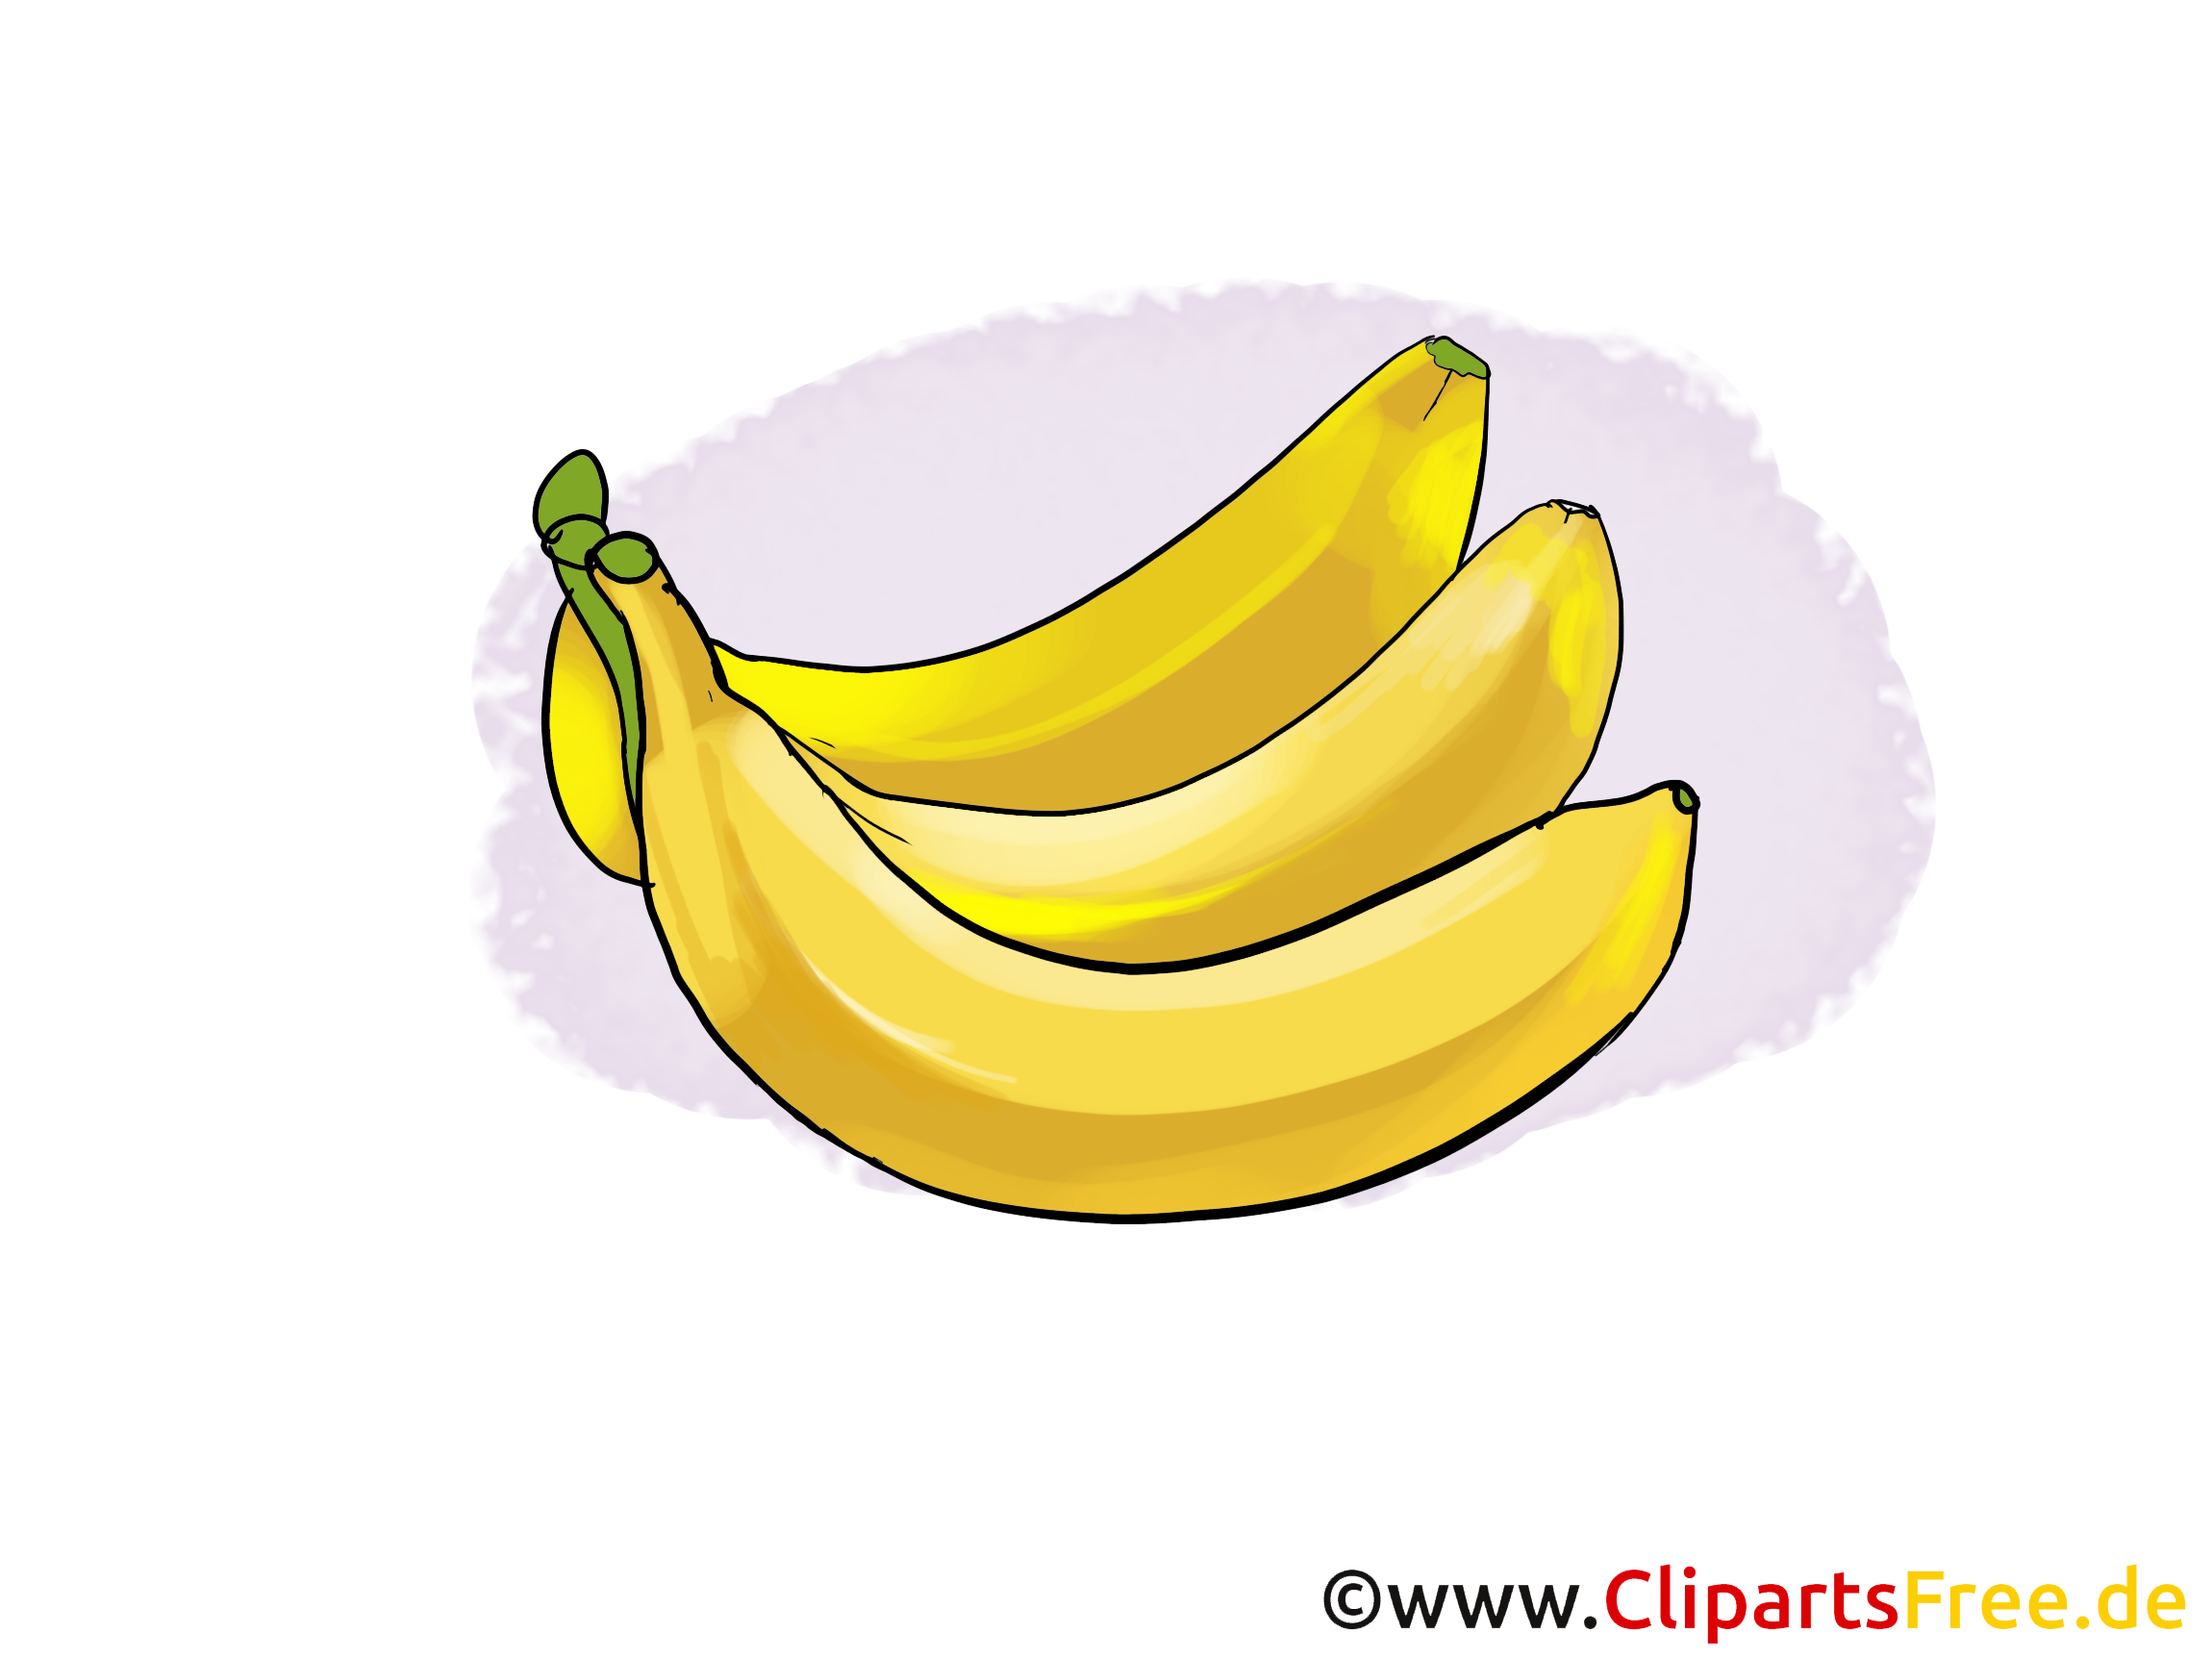 Bananes fruits image à télécharger gratuite